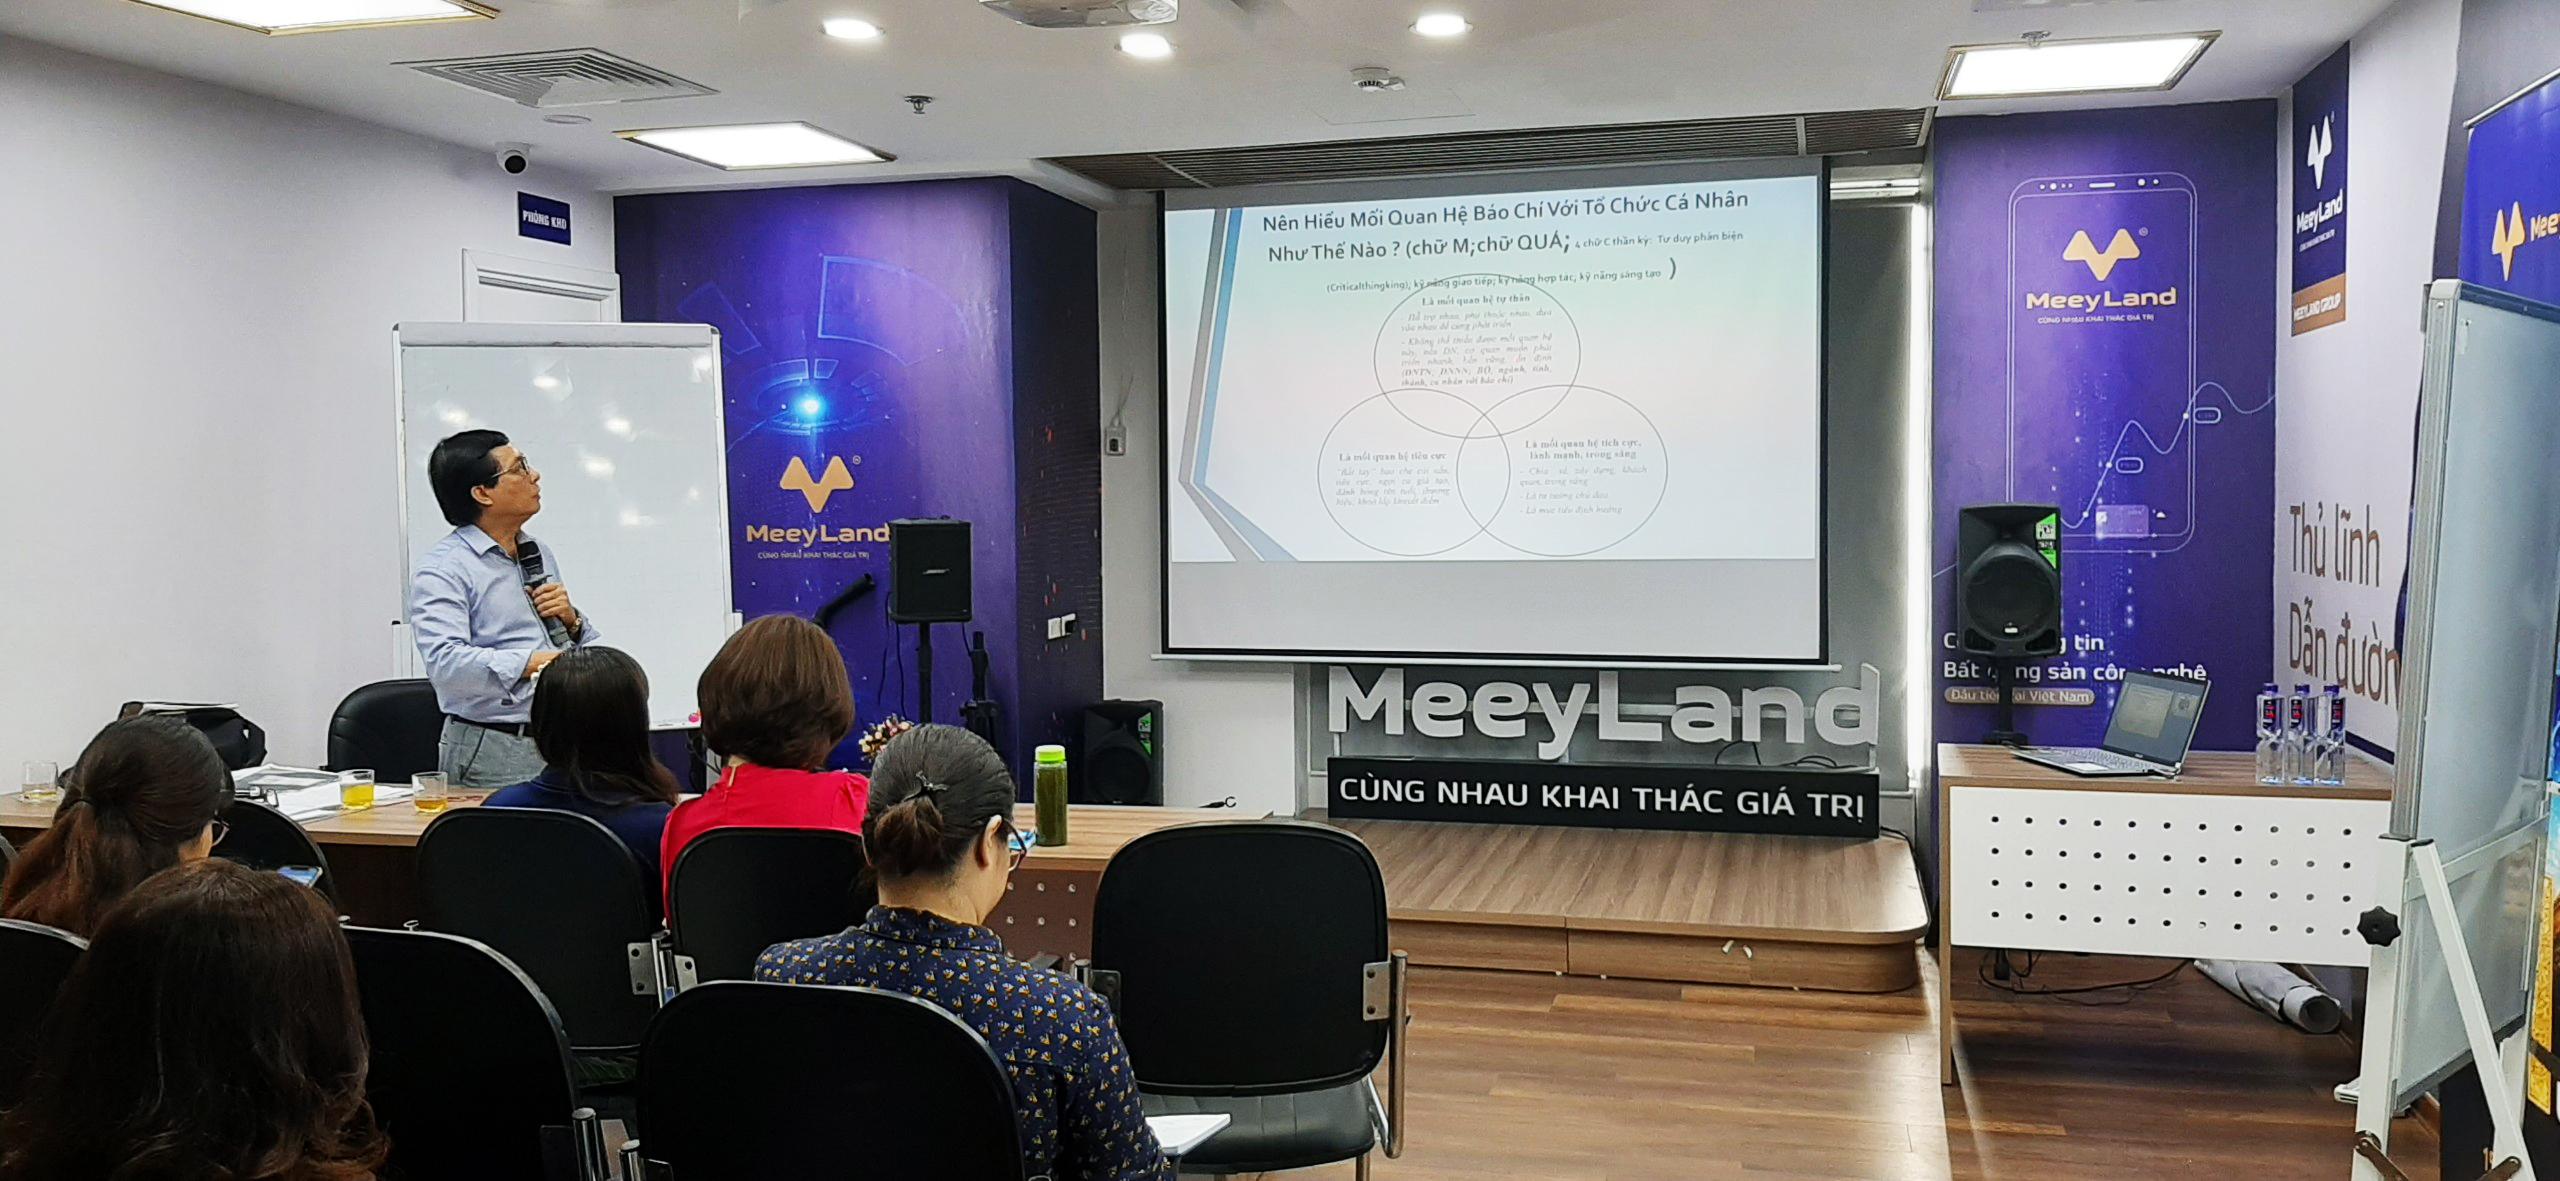  Ông Nguyễn Văn Hùng (Cựu Hàm trưởng Vụ báo chí - Xuất bản) đào tạo kỹ năng truyền thông cho CBNV Meey Land